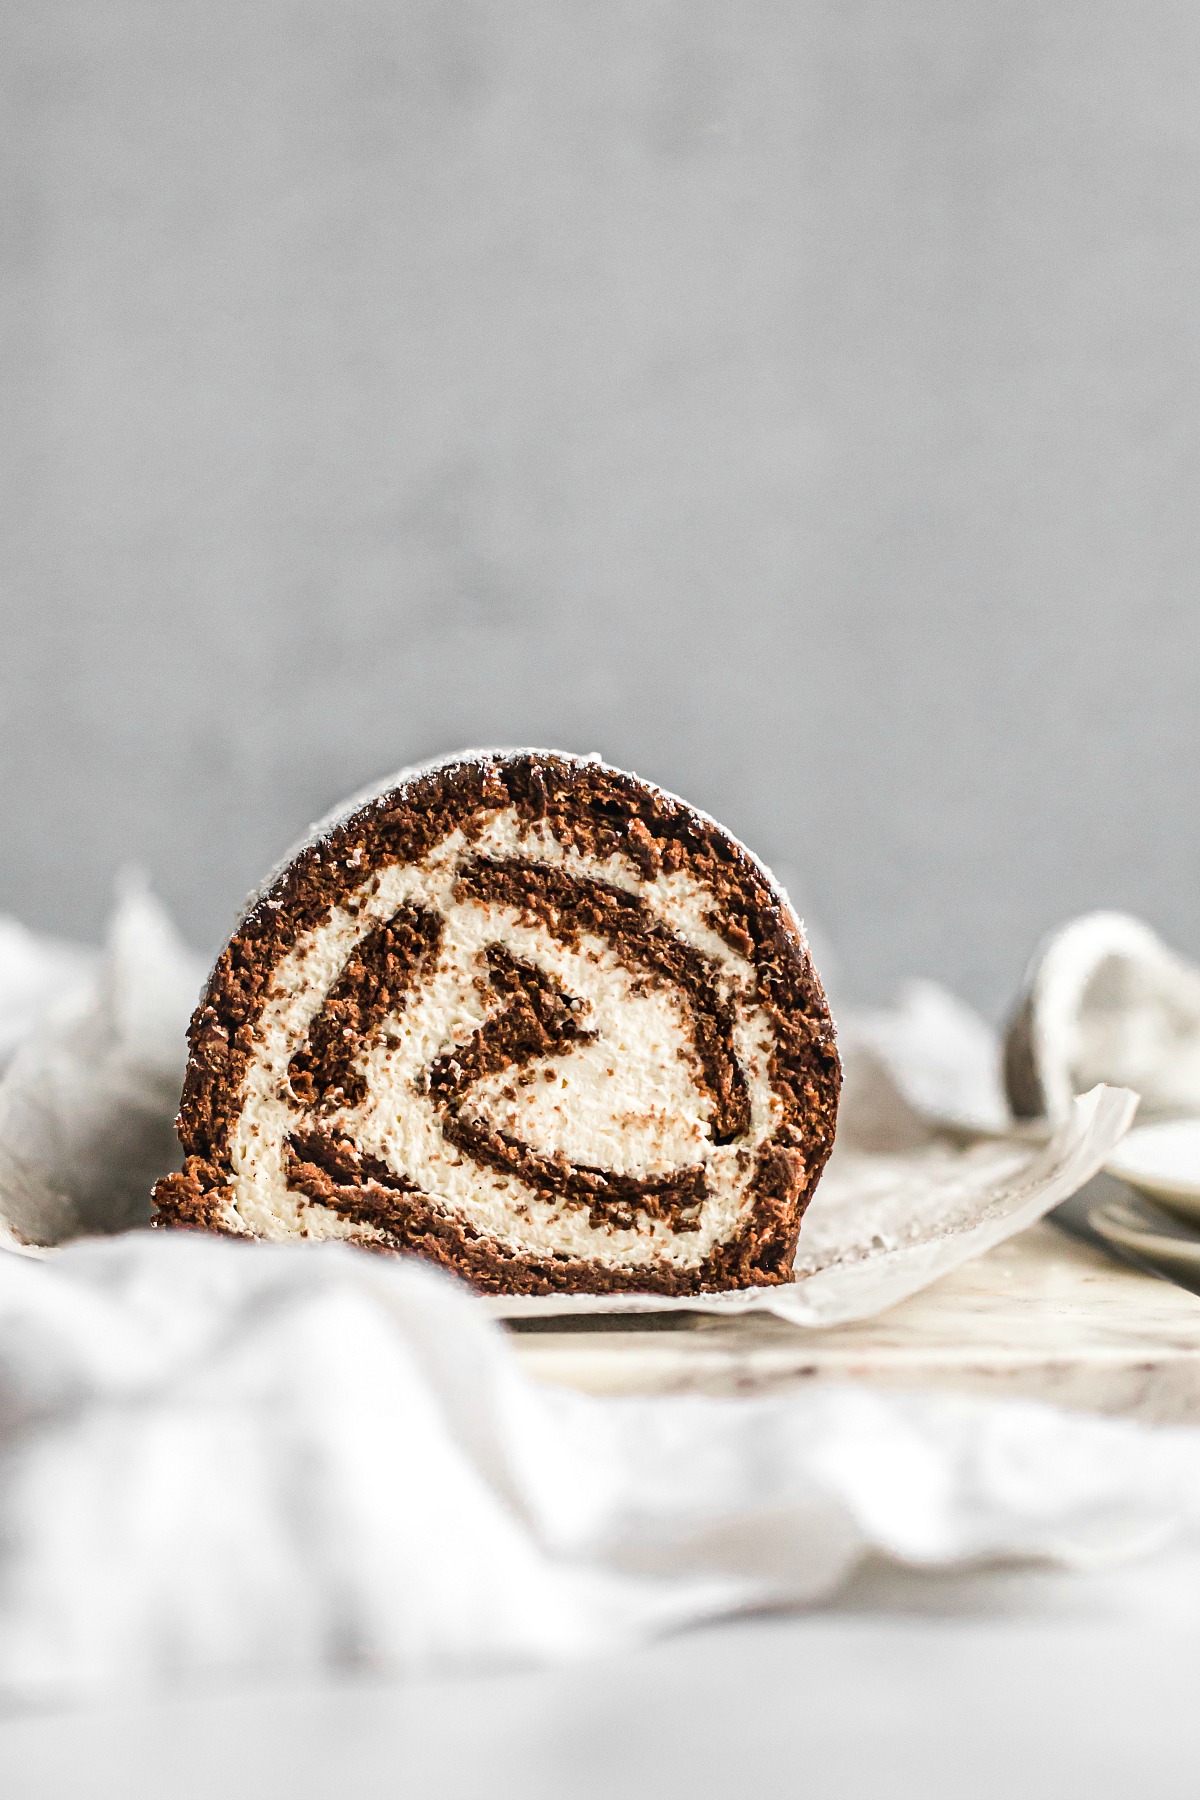 Chocolate Swiss Roll Cake Recipe (Grain-Free, Paleo)